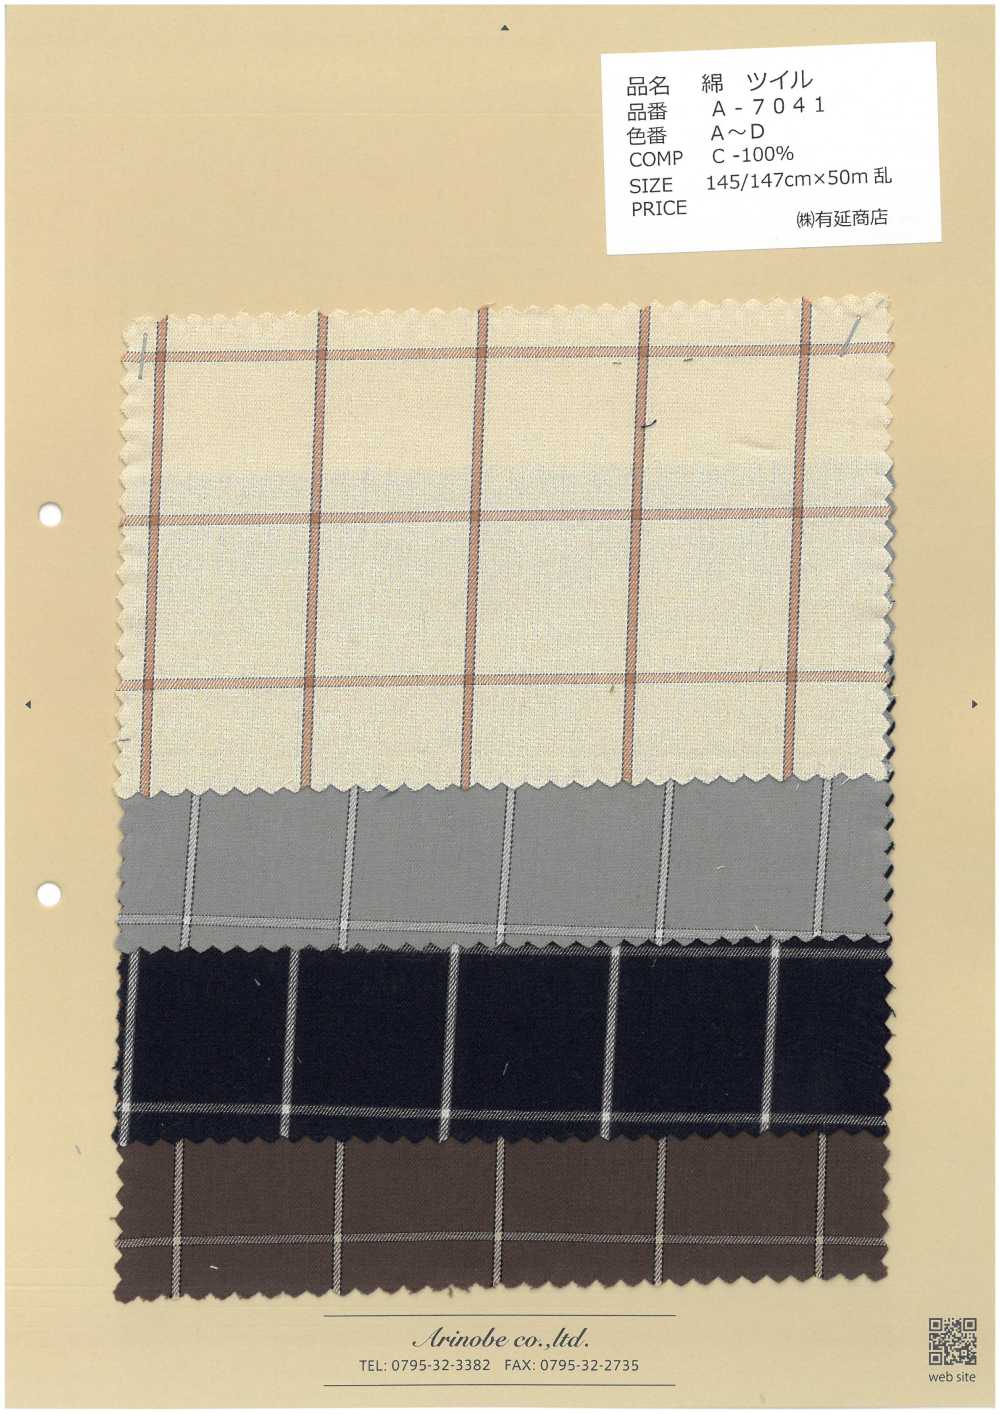 A-7041 Baumwoll-Twill-Plaid[Textilgewebe] ARINOBE CO., LTD.